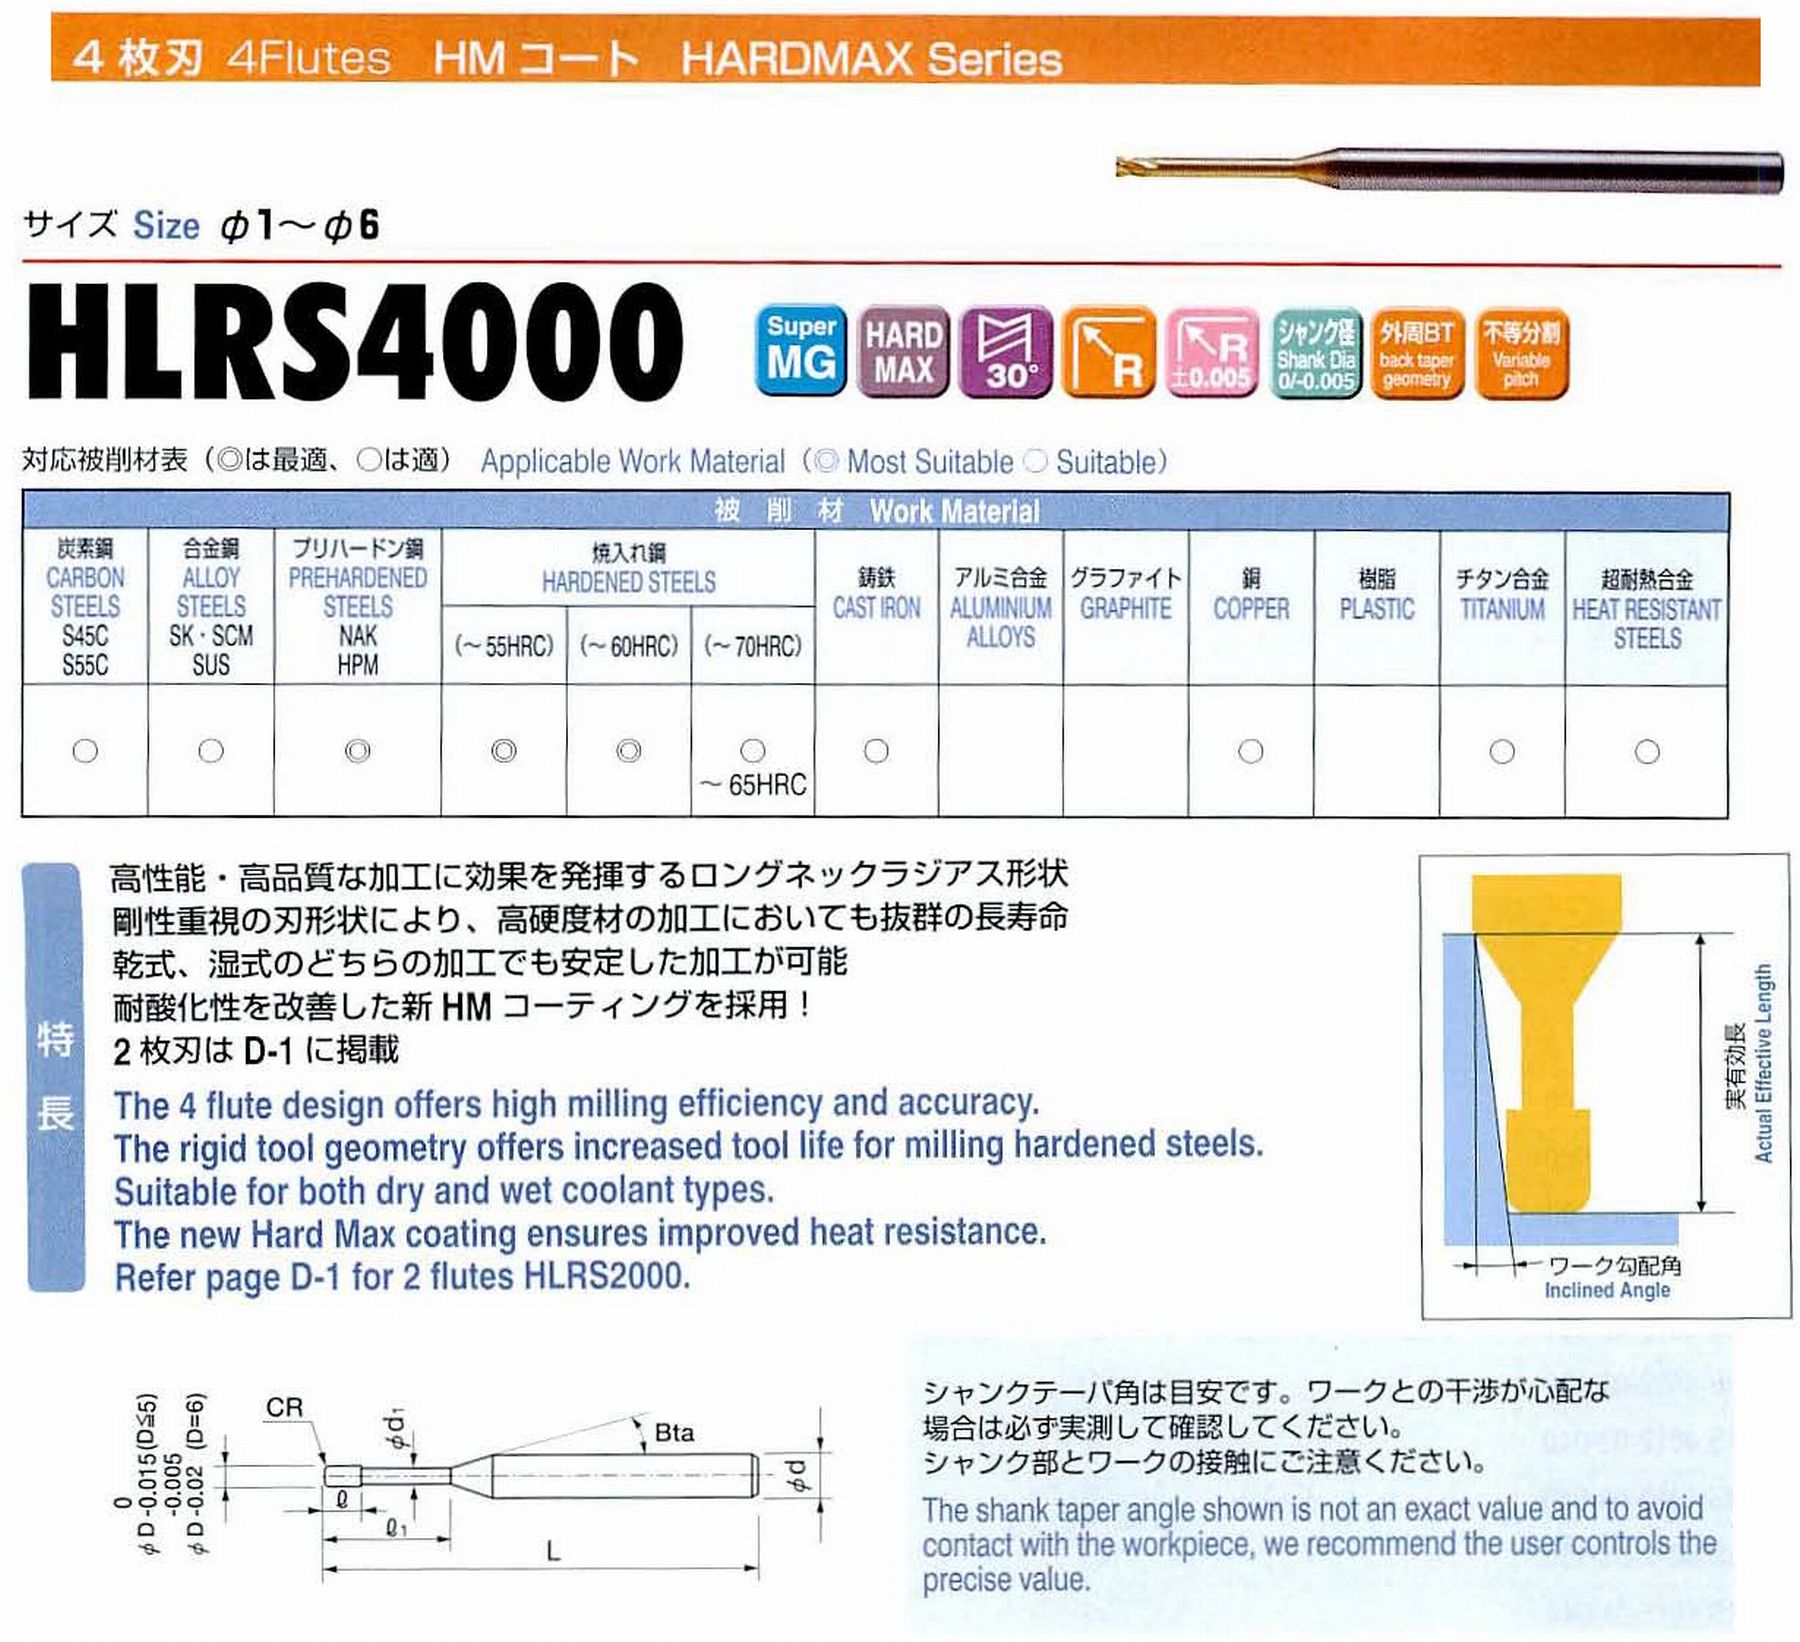 ユニオンツール 4枚刃 HLRS4010-01-050 外径1 コーナ半径R0.1 有効長5 刃長0.8 首径0.95 シャンクテーパ角16° 全長50 シャンク径4